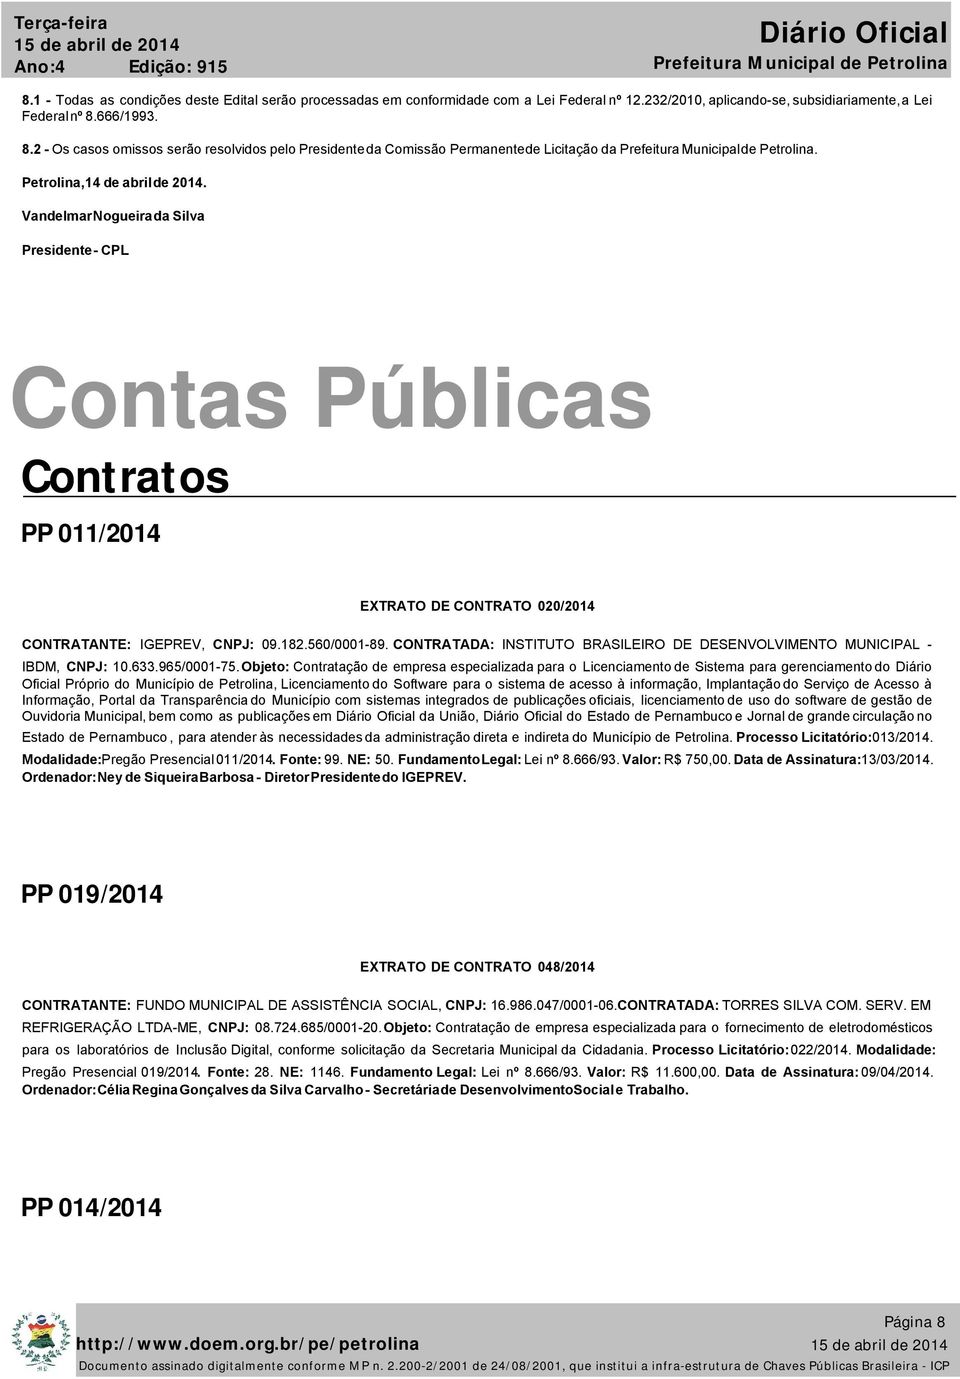 CONTRATADA: INSTITUTO BRASILEIRO DE DESENVOLVIMENTO MUNICIPAL - IBDM, CNPJ: 10.633.965/0001-75.